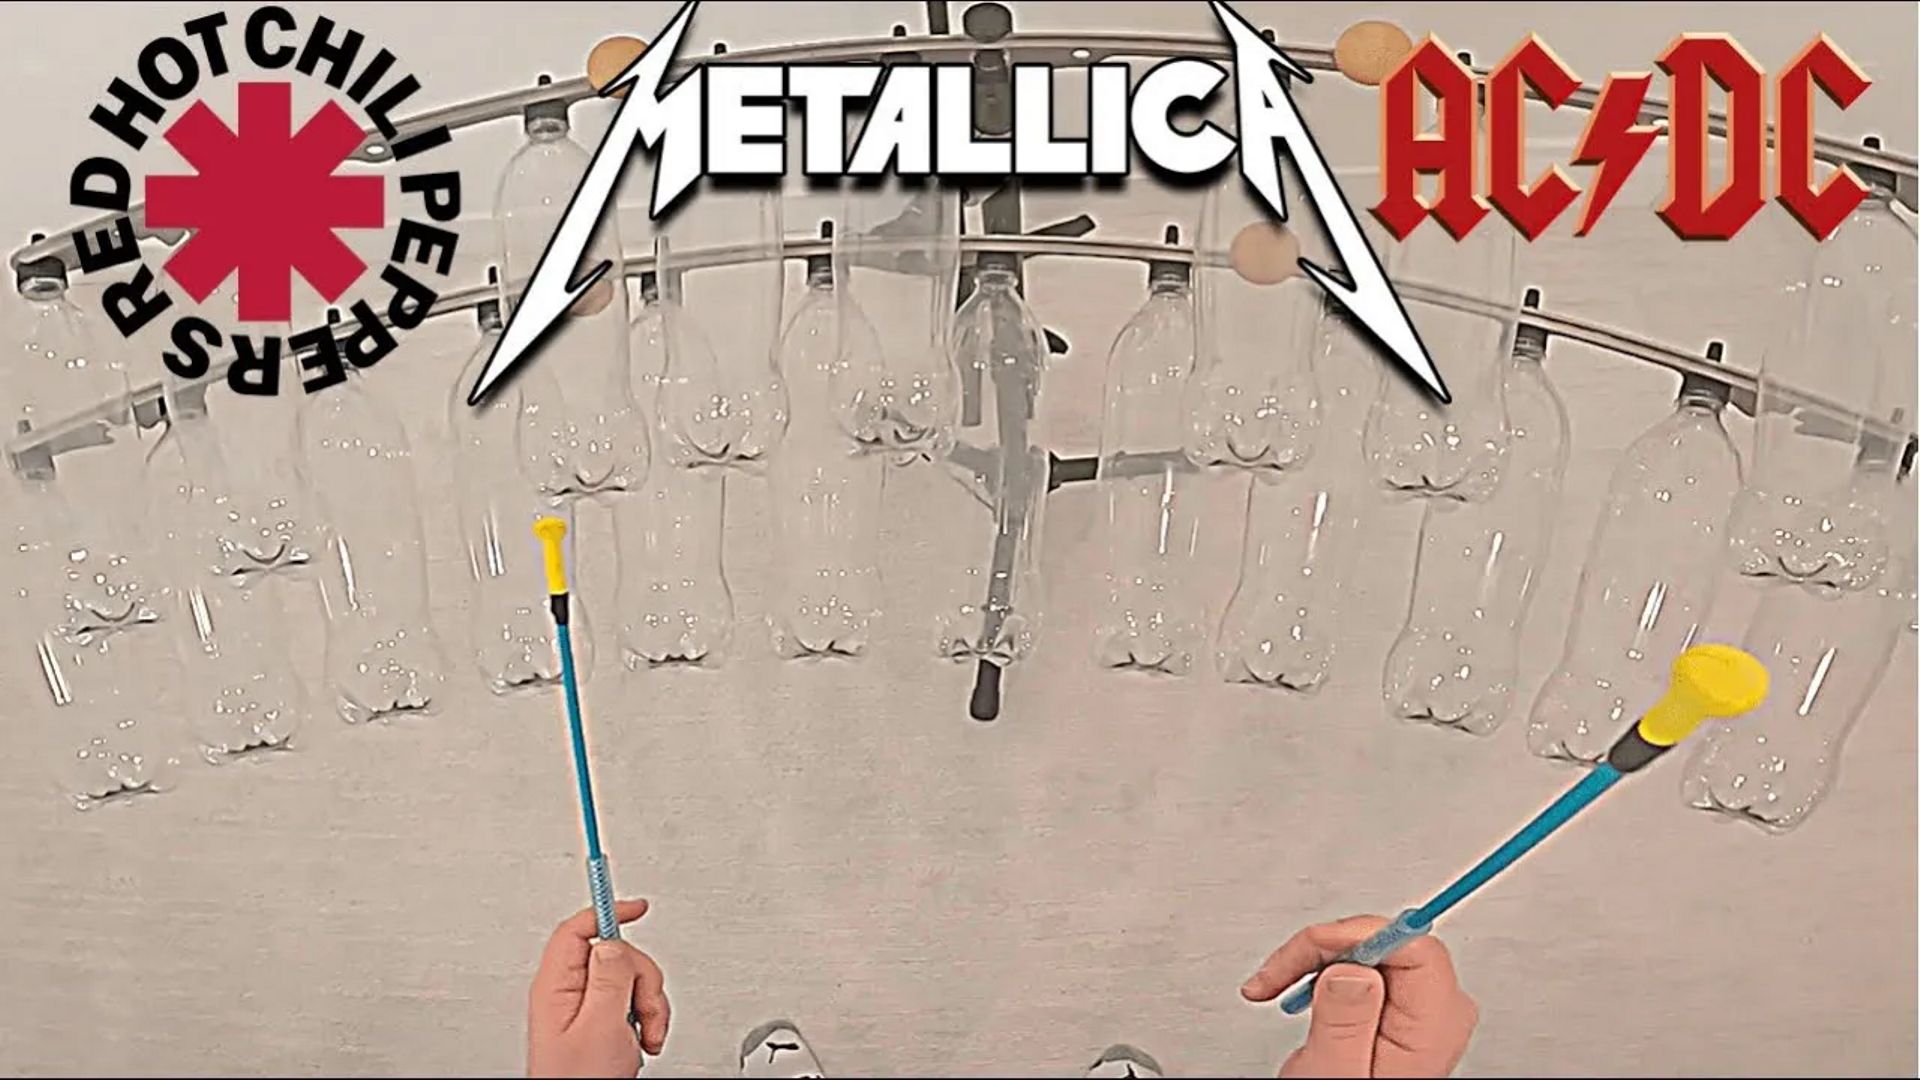 Regardez ces classiques de Metallica, AC/DC et Iron Maiden repris uniquement à l'aide de percussions étonnantes